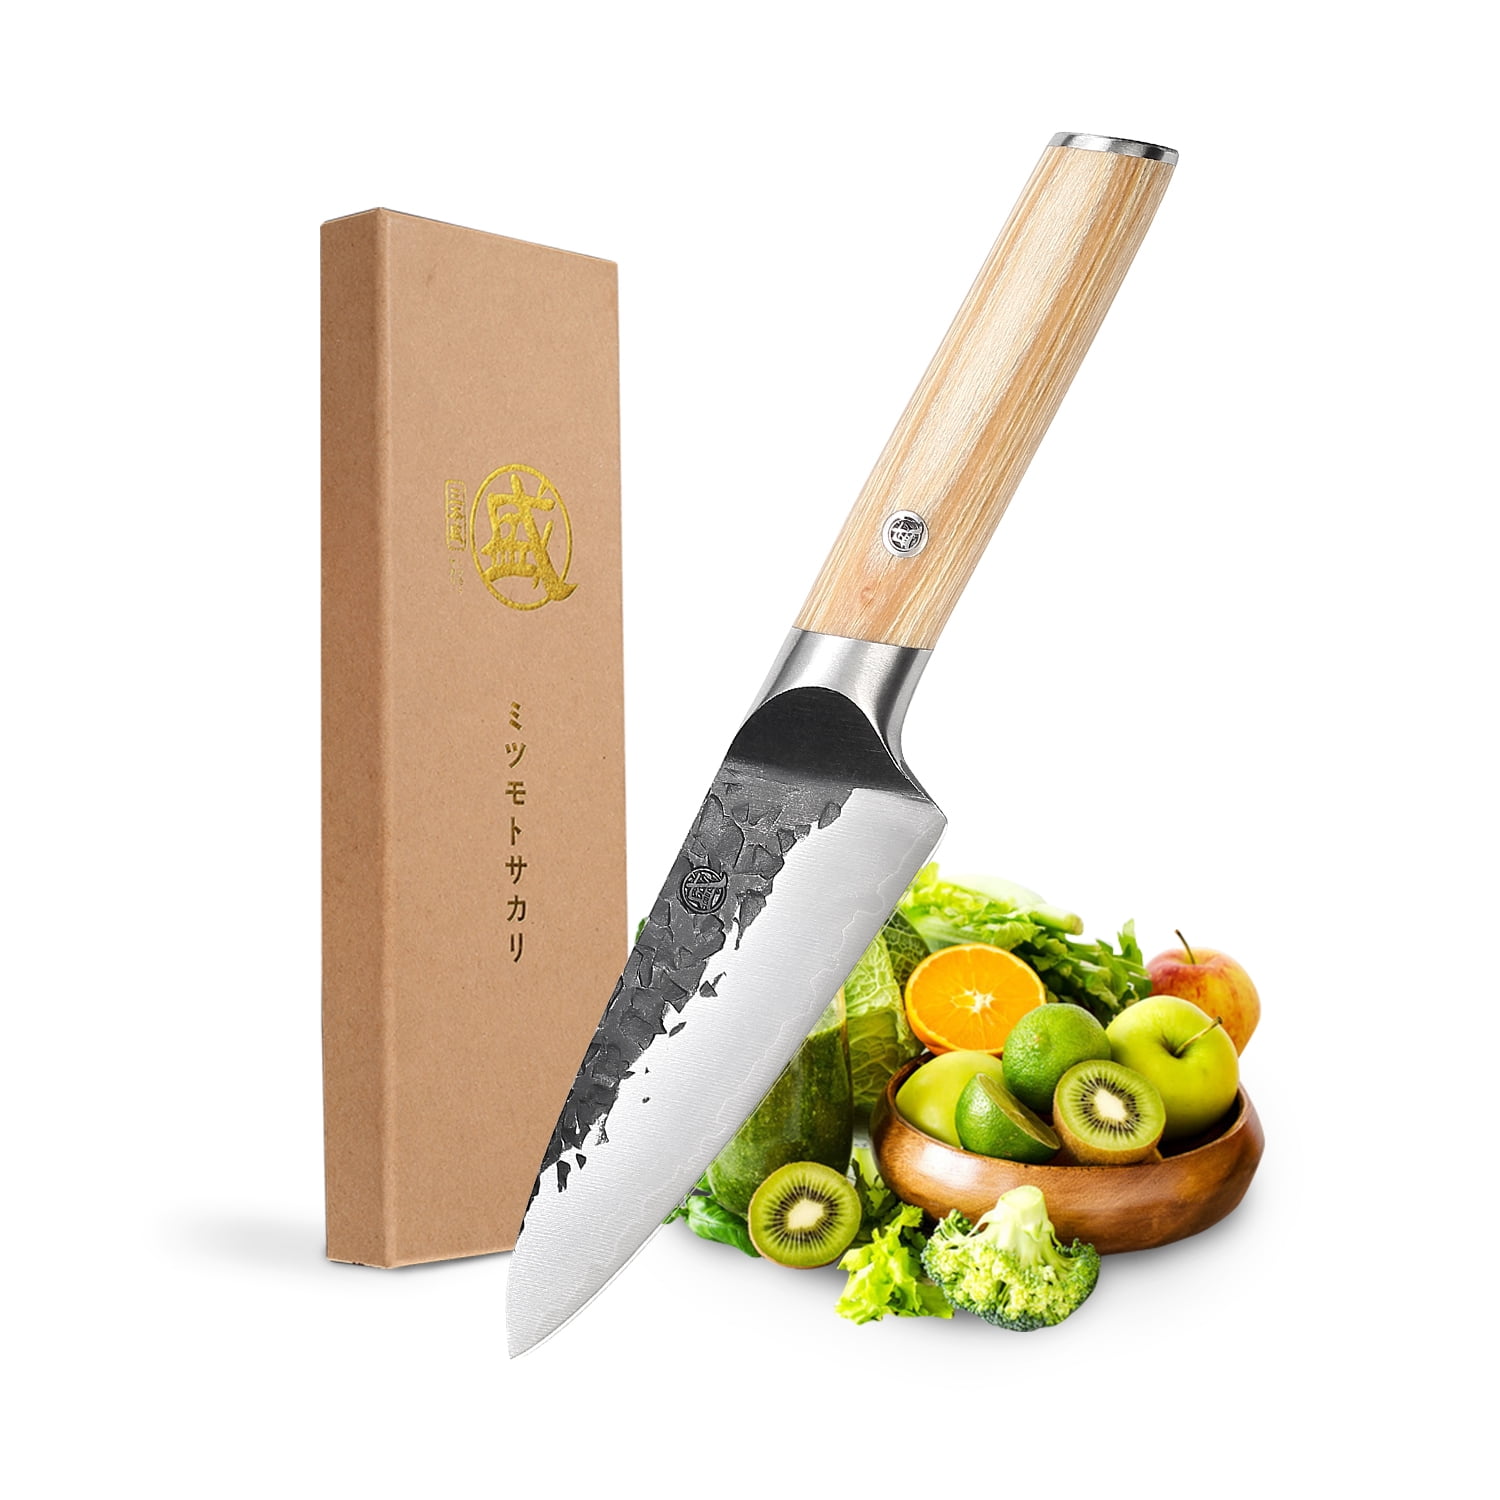  MITSUMOTO SAKARI 10.5 inch Japanese Boning Knife